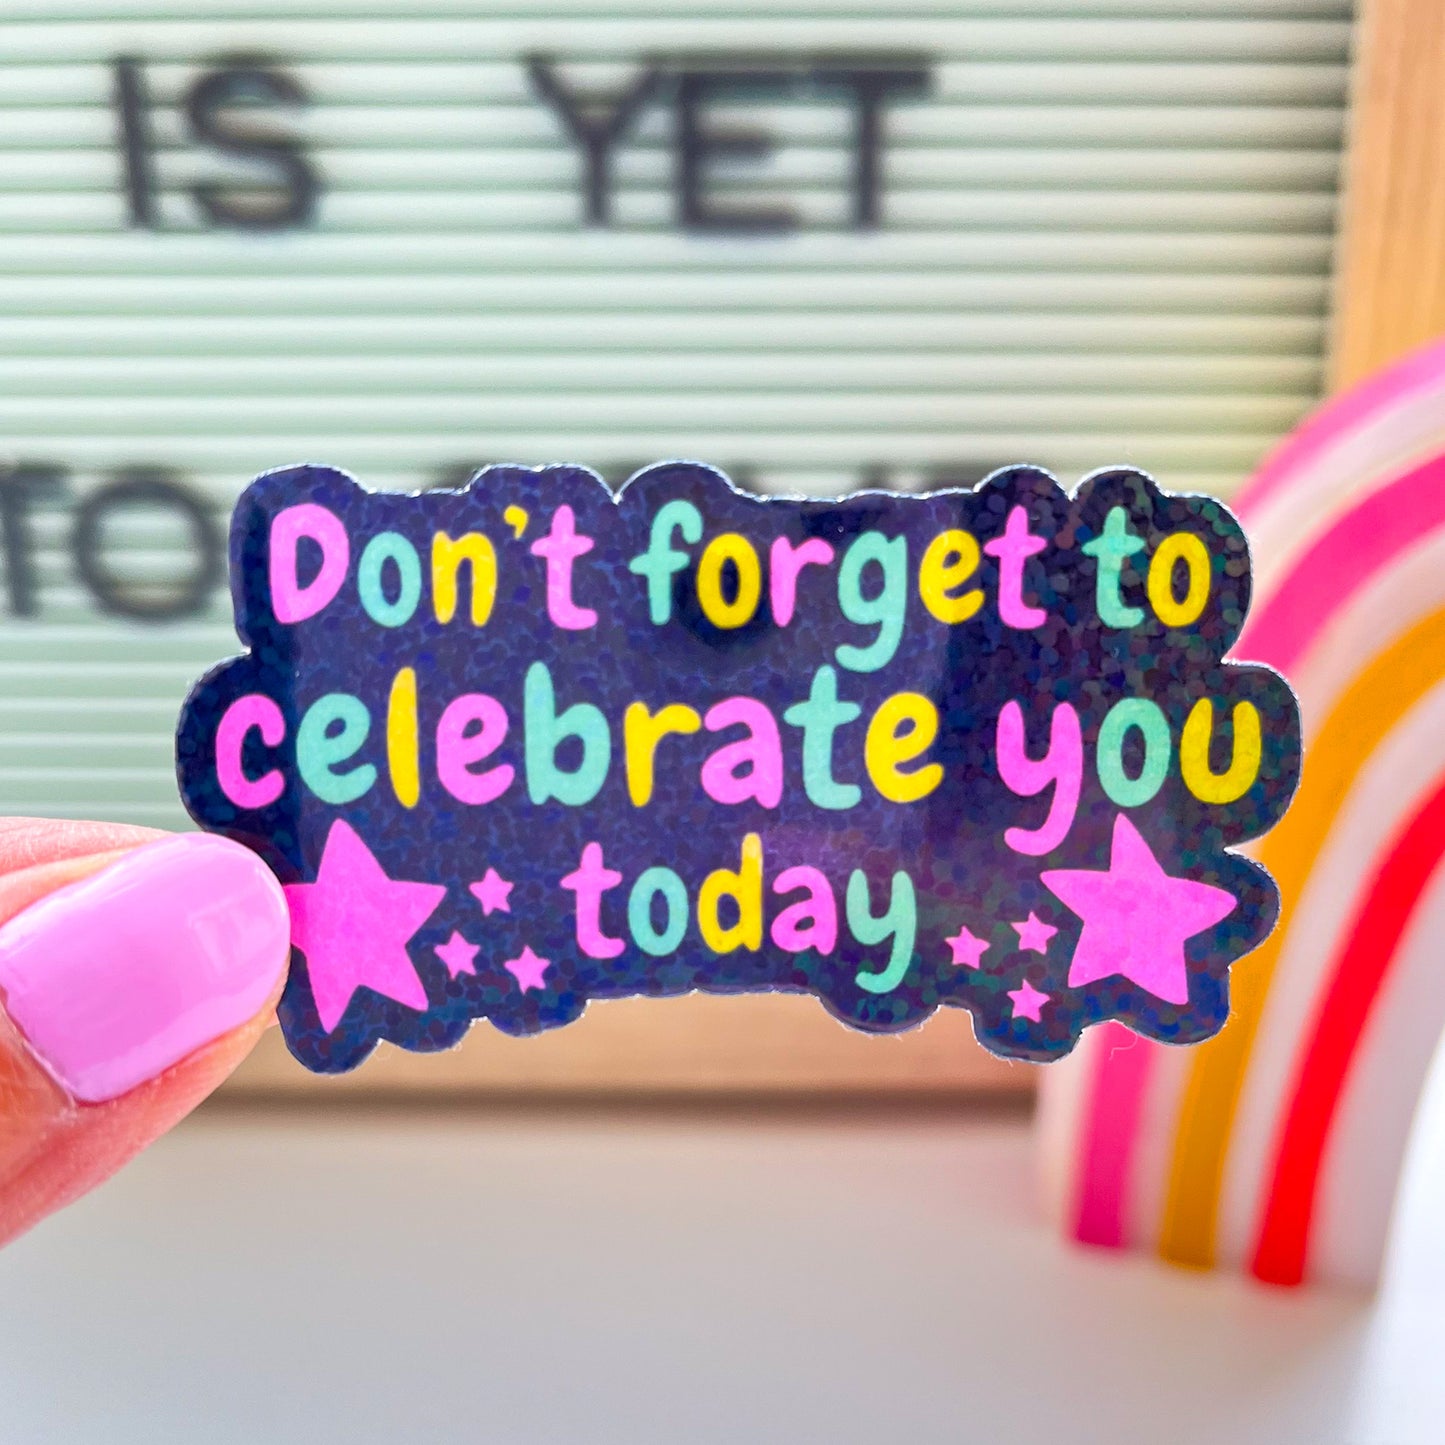 Celebrate you sticker in hand